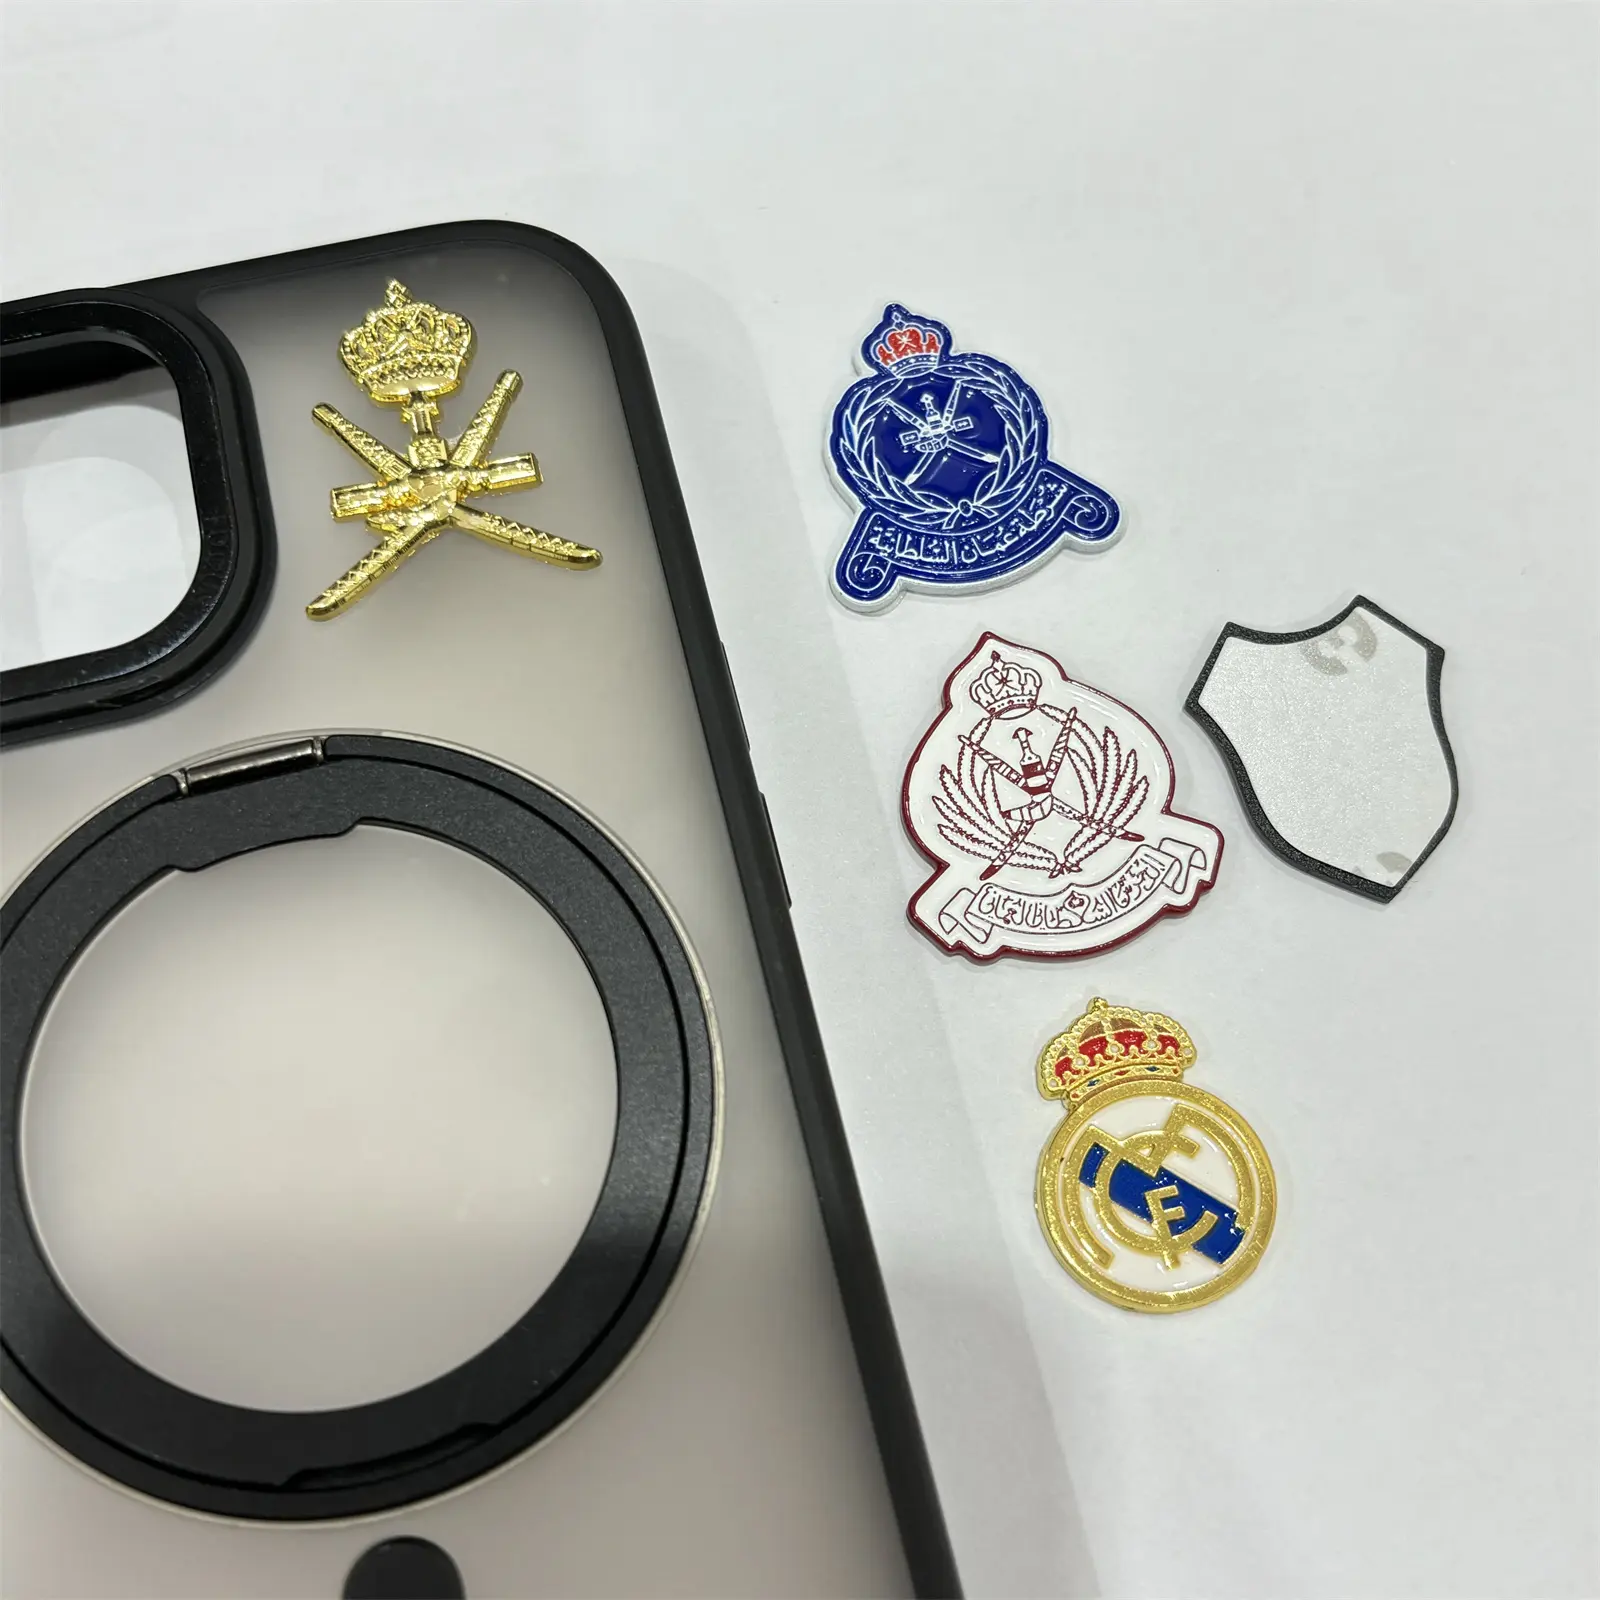 Bros kustom Pin Oman stiker logam lencana ponsel stiker lambang untuk casing ponsel